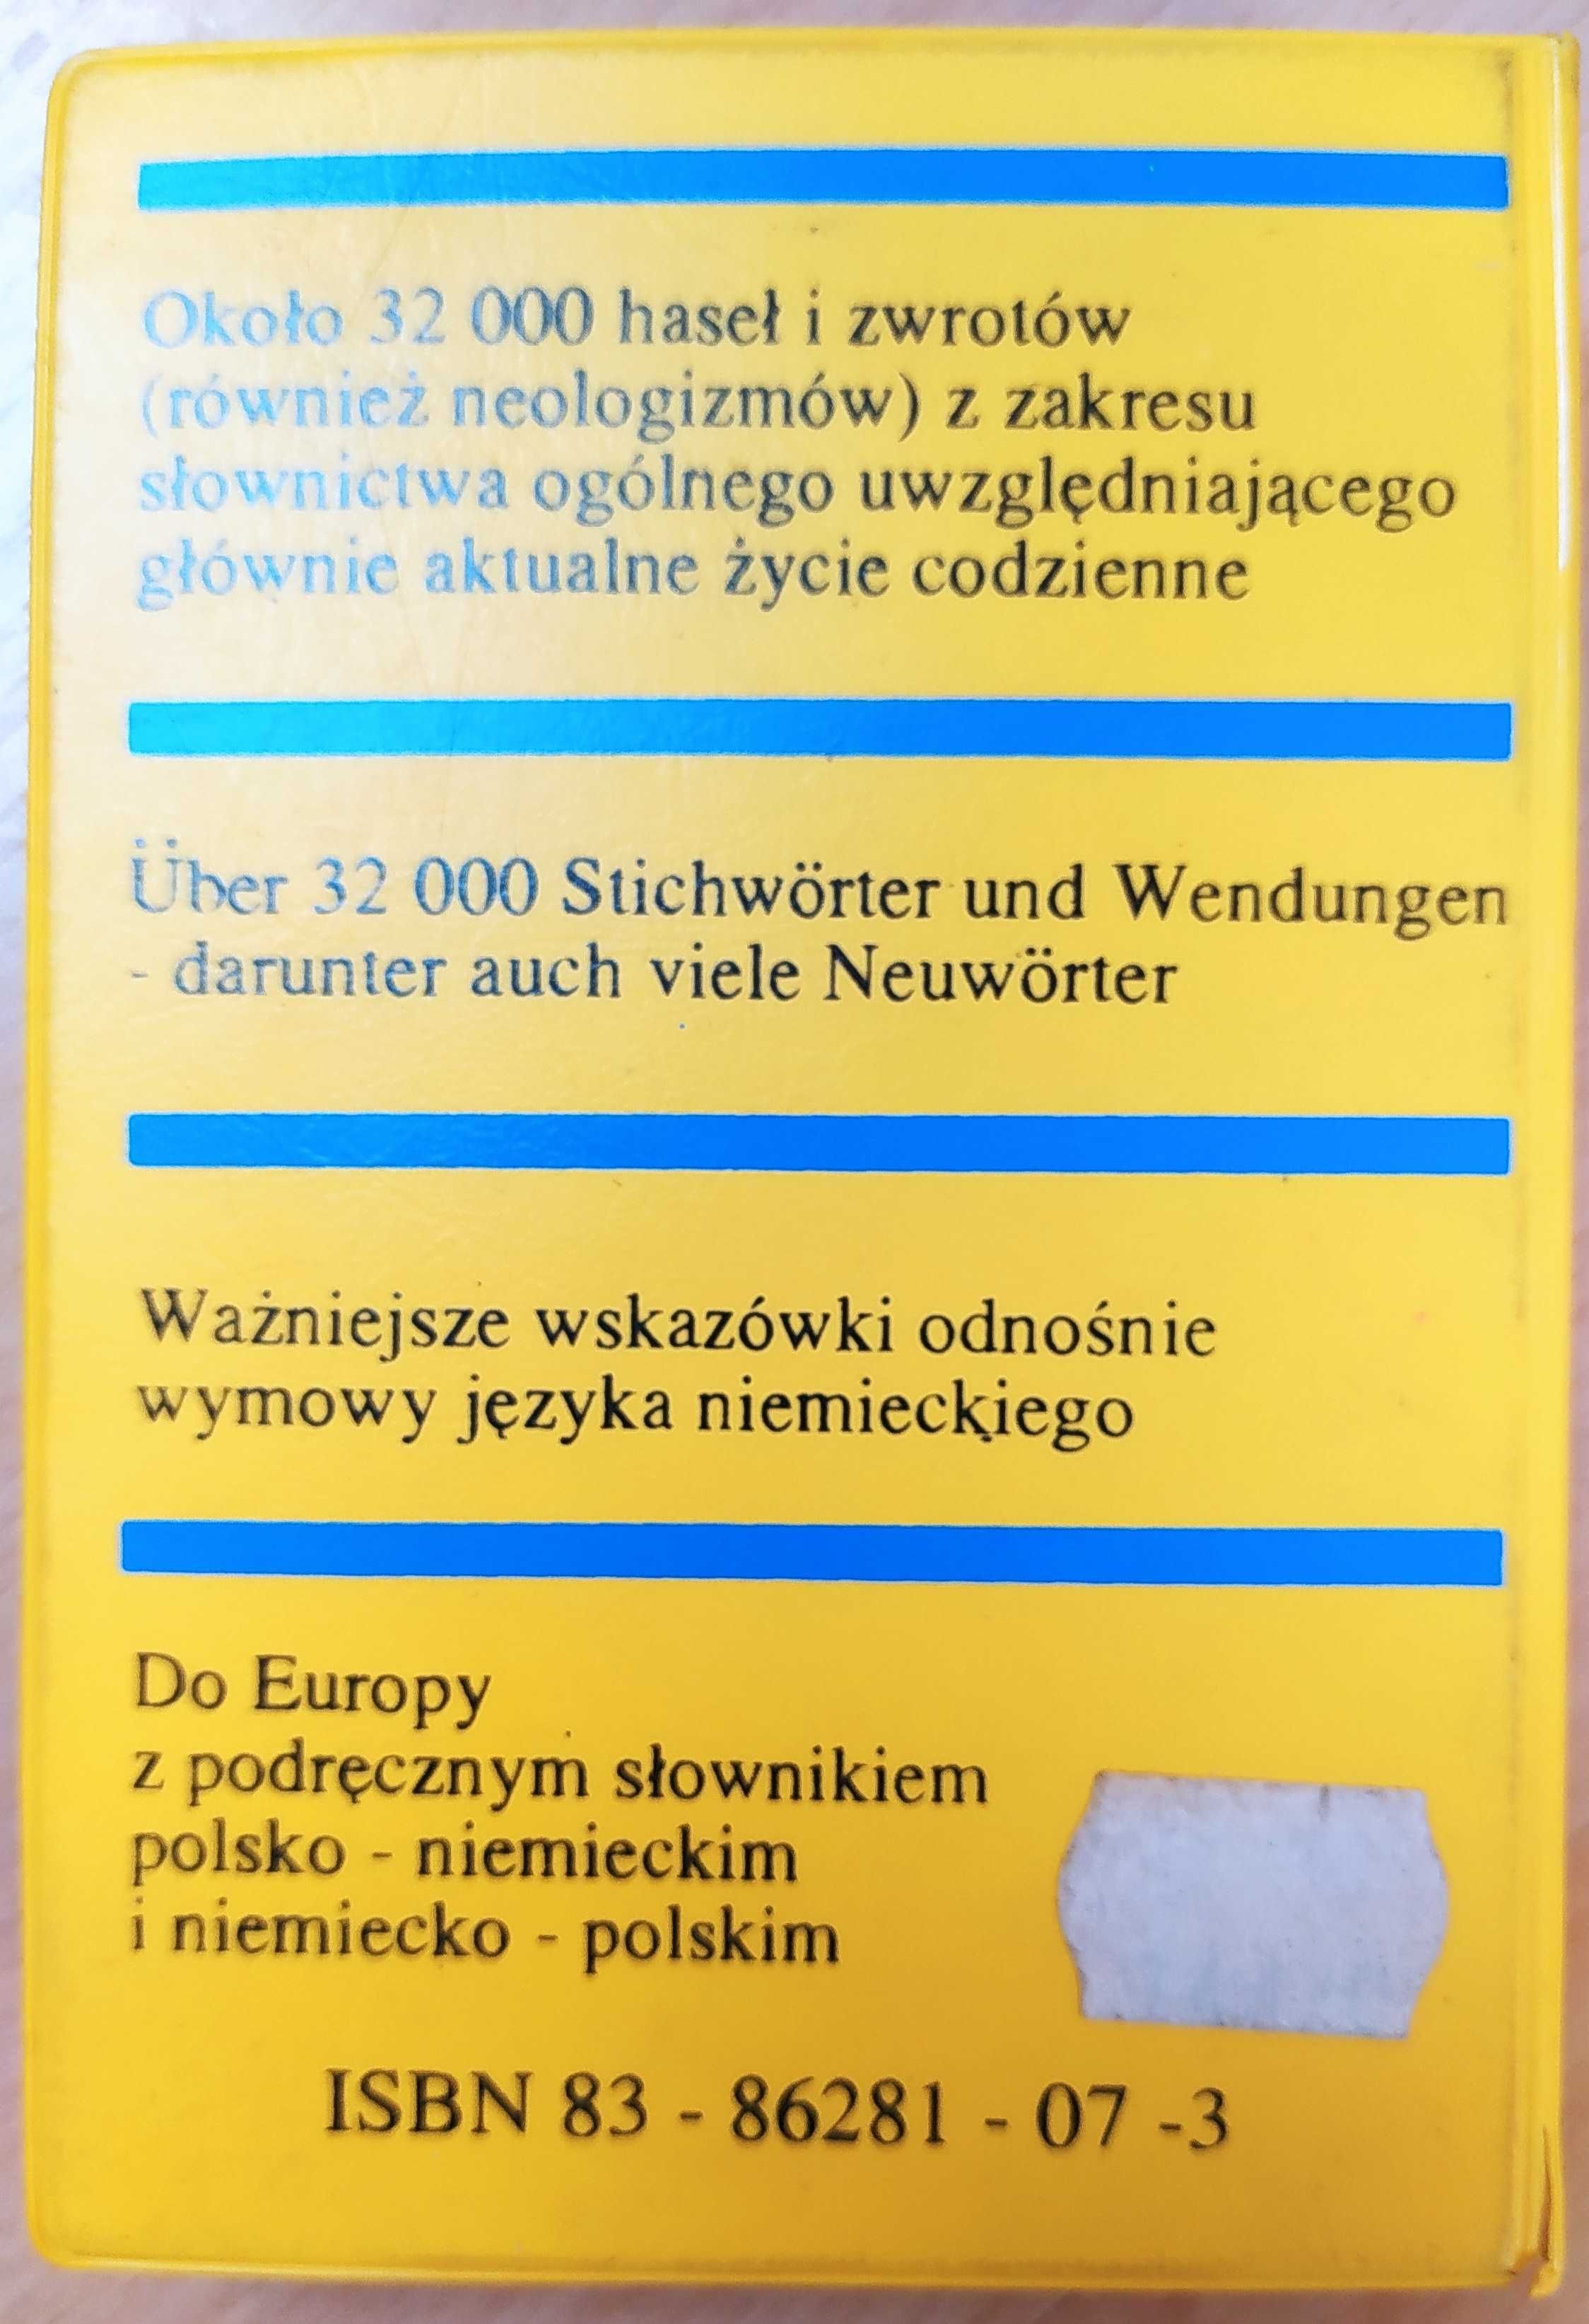 Podręczny słownik polsko-niemiecki Dutkiewicz Ostroróg 32 tys haseł